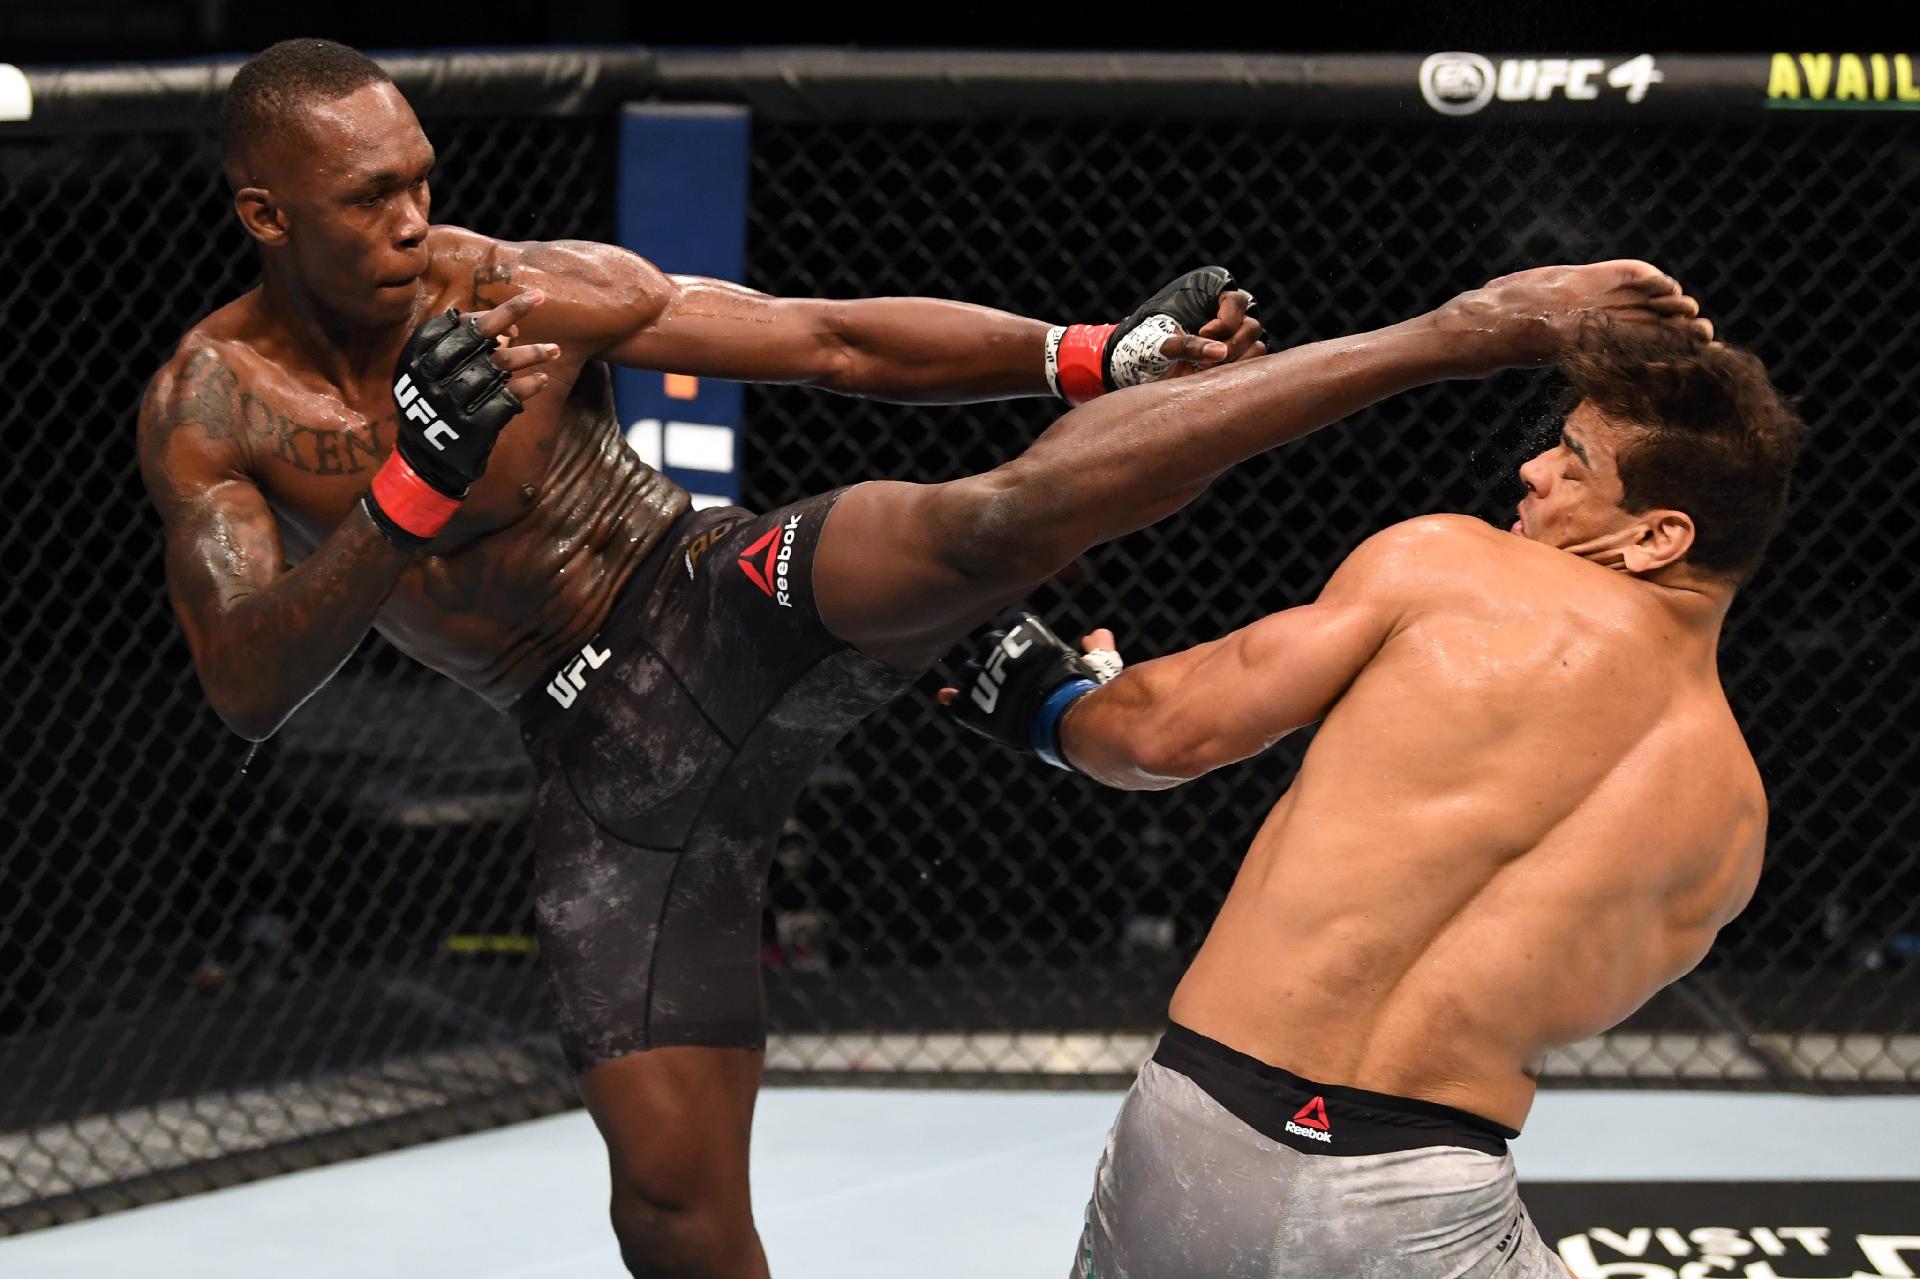 Borrachinha é nocauteado com facilidade por Adesanya no UFC 253. Veja fotos - 27/09/2020 - UOL Esporte